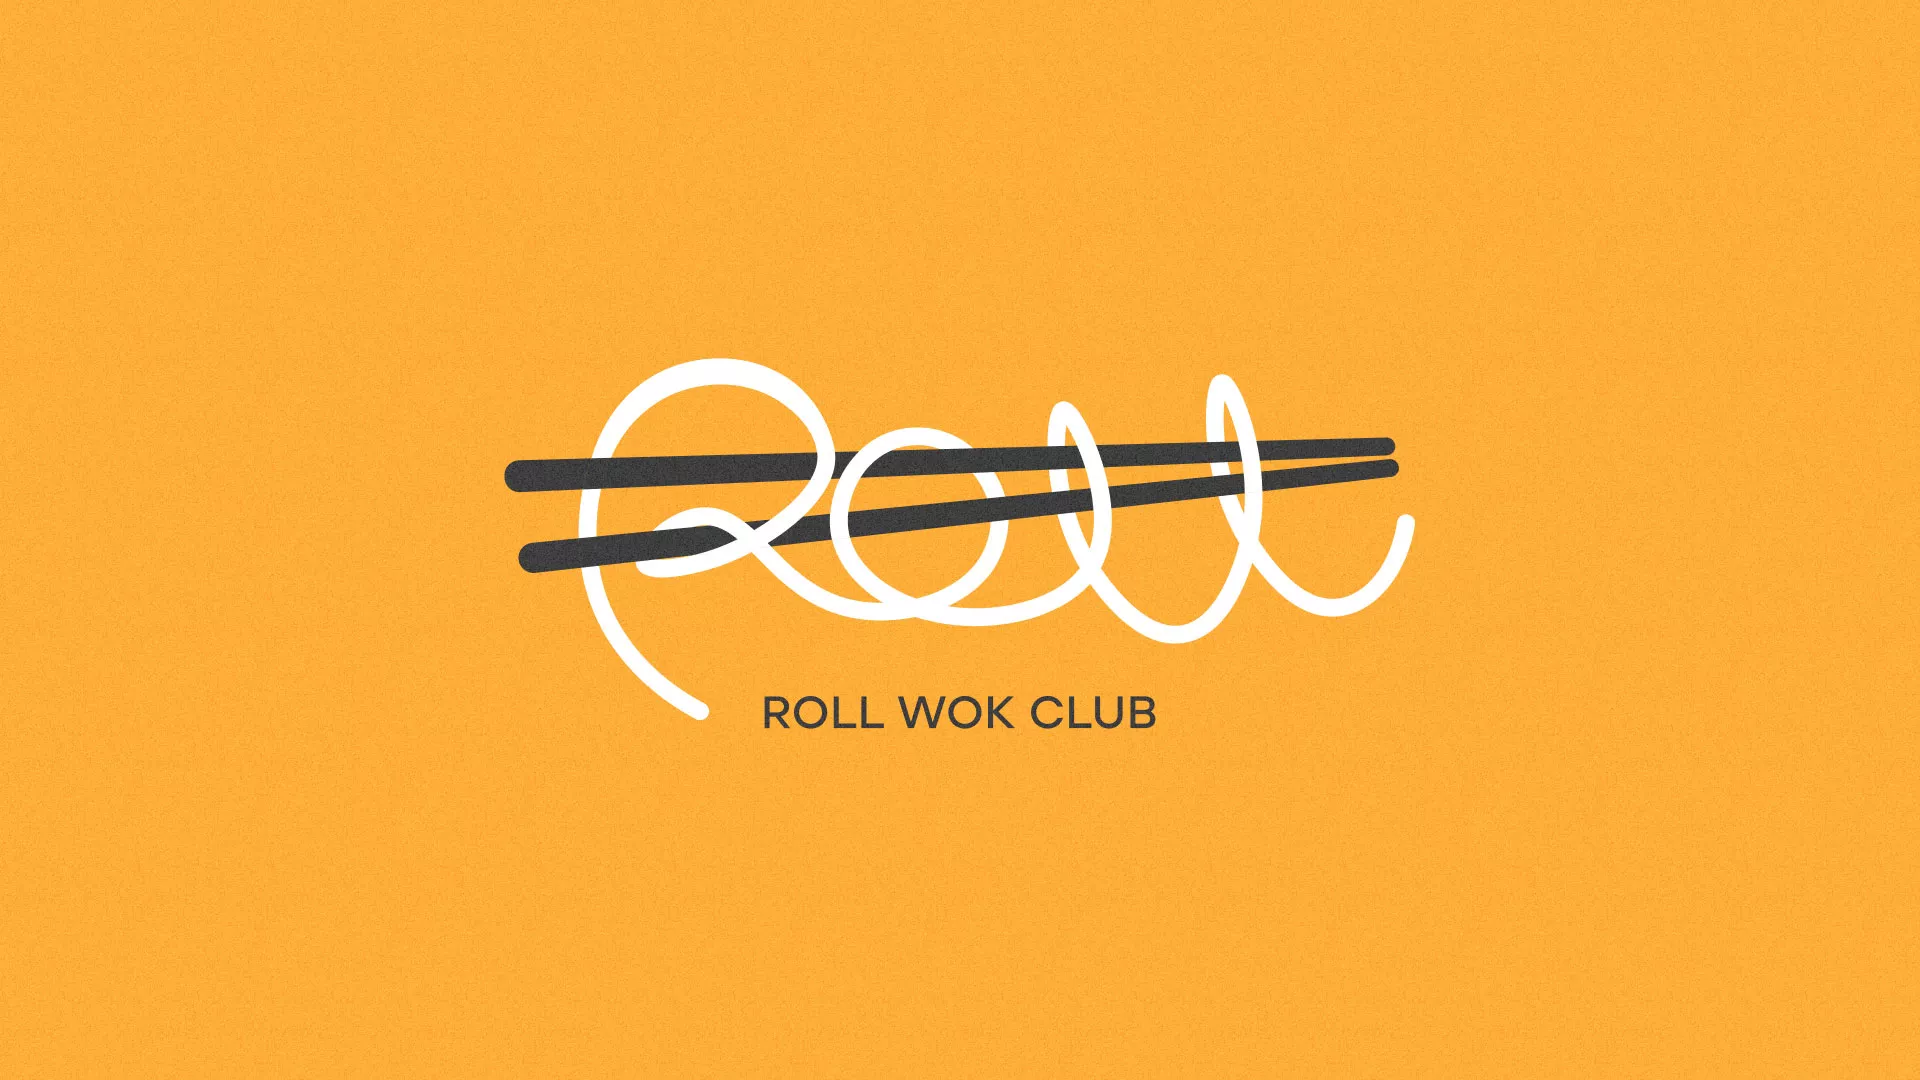 Создание дизайна упаковки суши-бара «Roll Wok Club» в Болохово